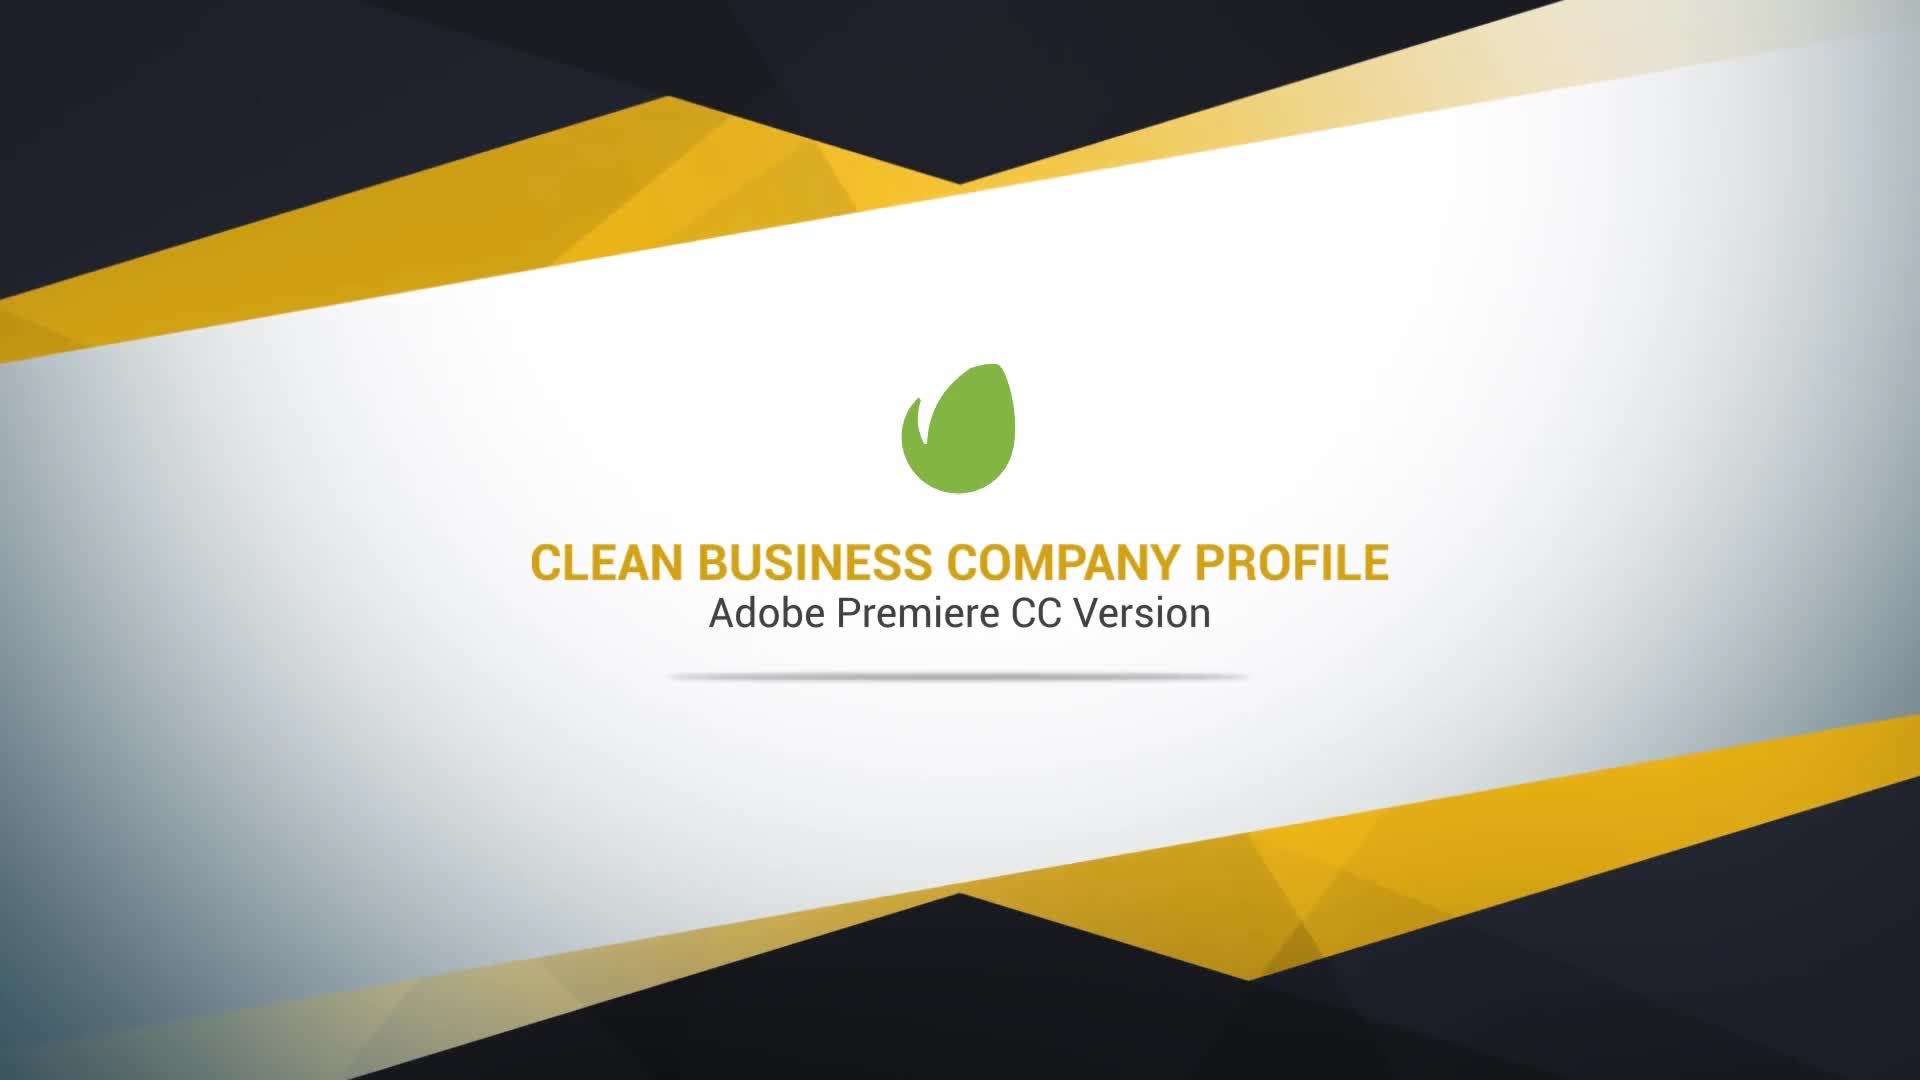 Clean Business Company Profile II Videohive 23875473 Premiere Pro Image 1